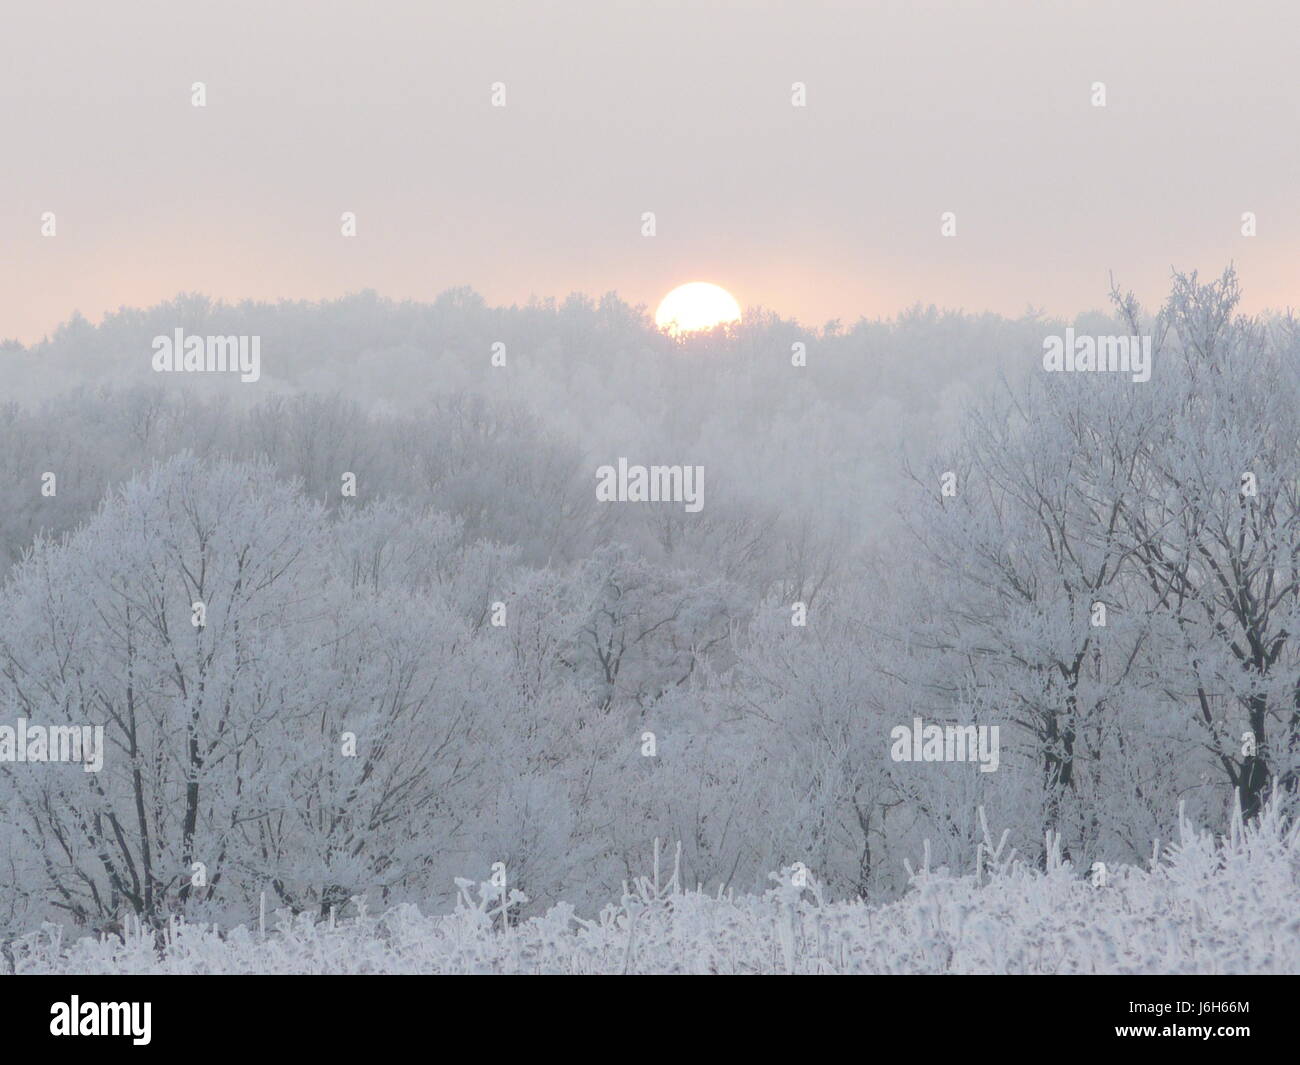 Jahreszeiten hiver bume sonnenuntergang klte natur landschaft schnee Banque D'Images